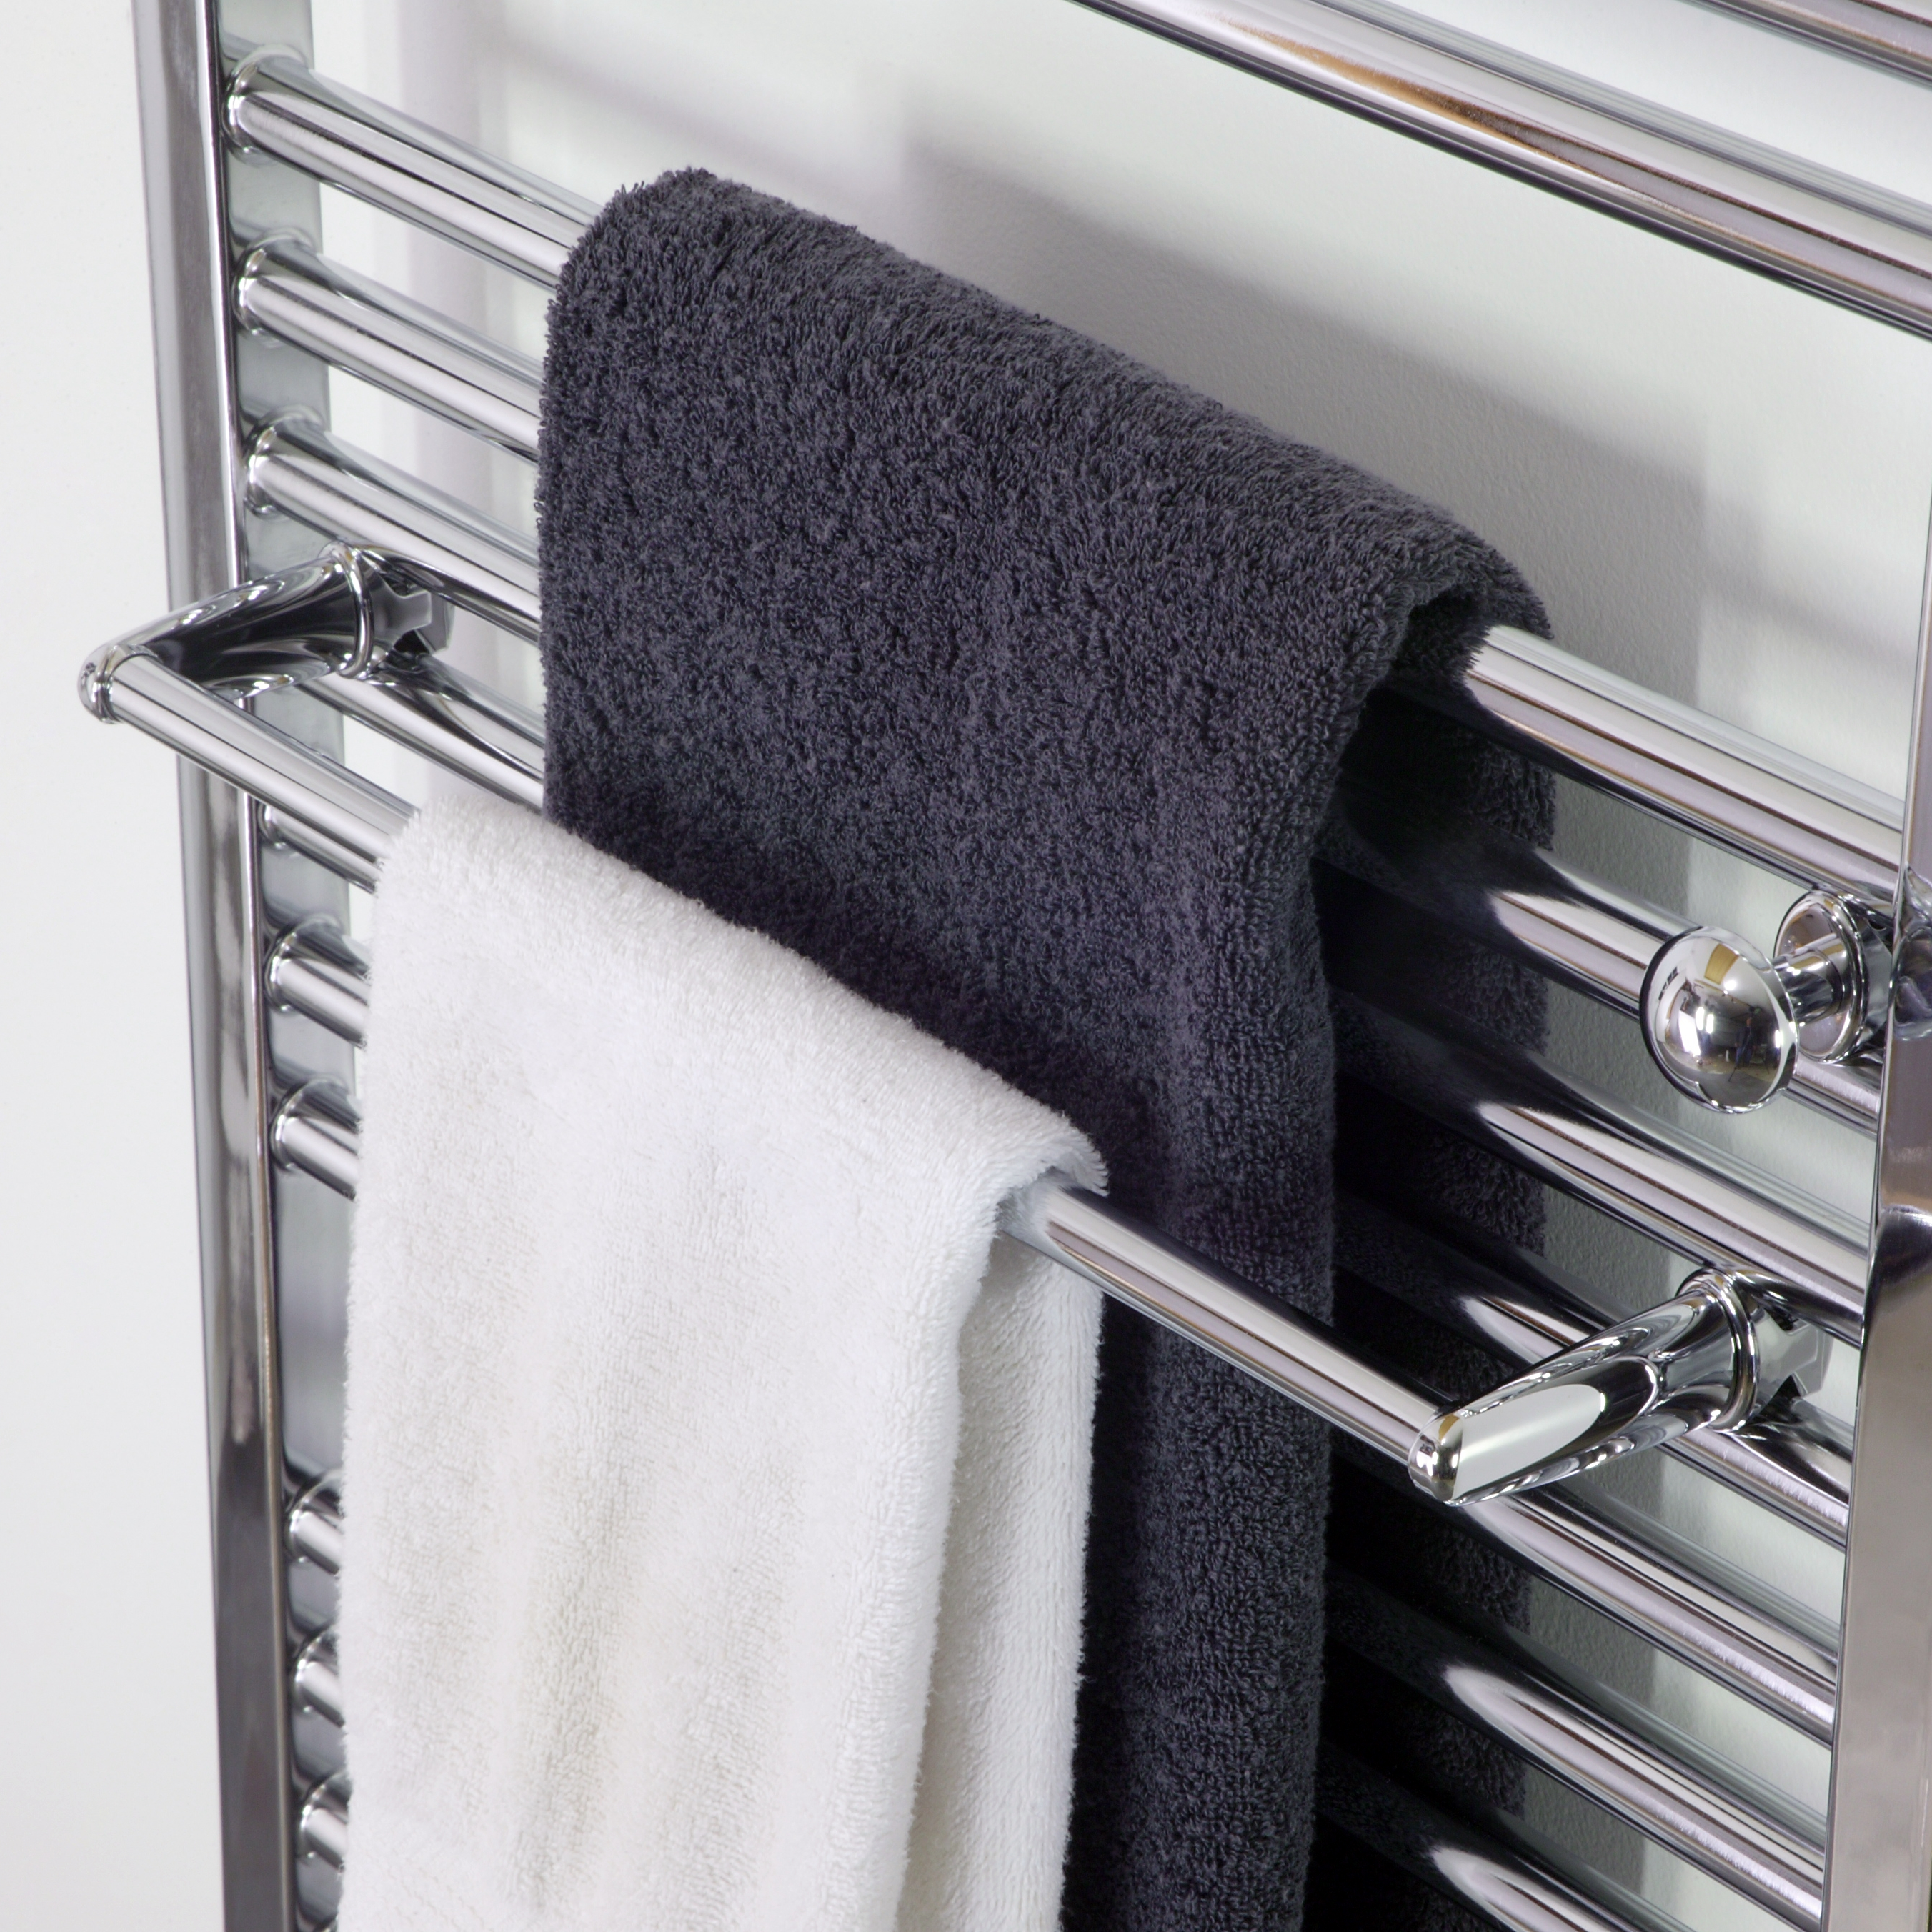 Высуши полотенце. Сушилка Towel Warmer. Towel Rack сушилка для белья. Полотенцесушитель Towel Dryer -p-352-500. Полотенцесушитель Towel Rack r116.